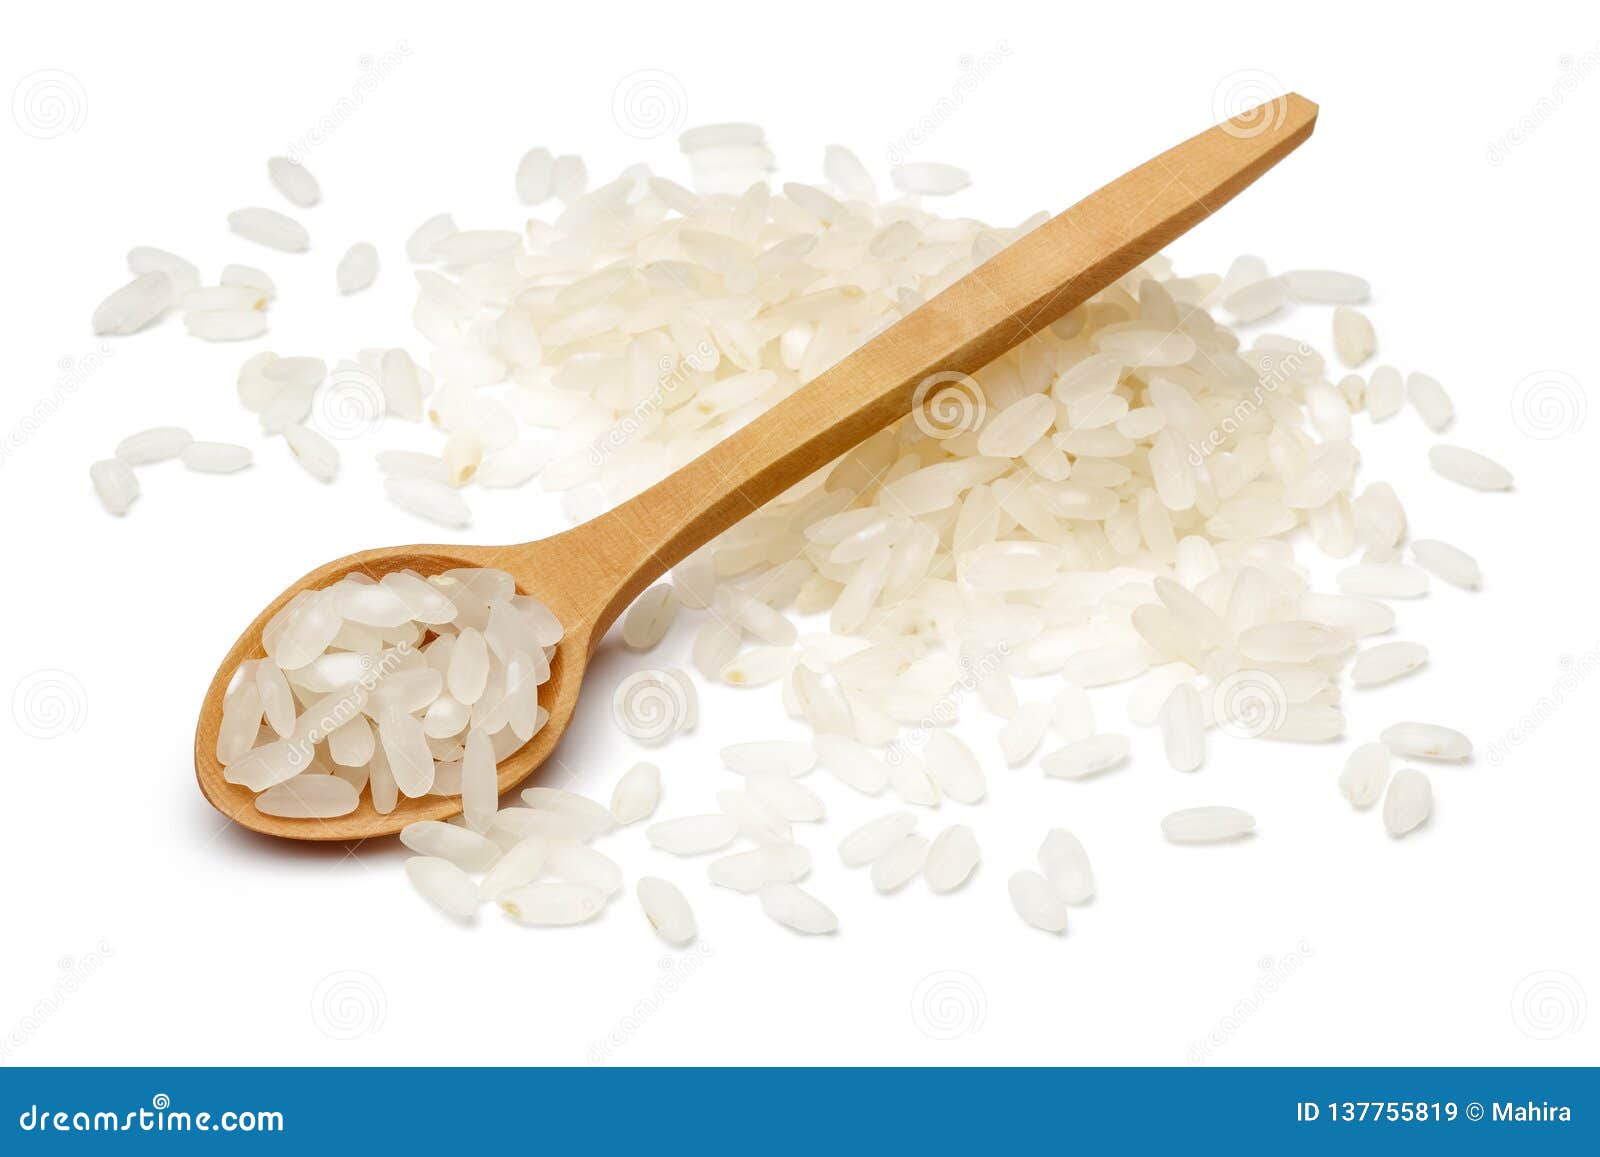 1 столовая ложка рисовой муки. Ложка для риса. Рис на белом фоне. Ложка зерна. Чайная ложка риса.